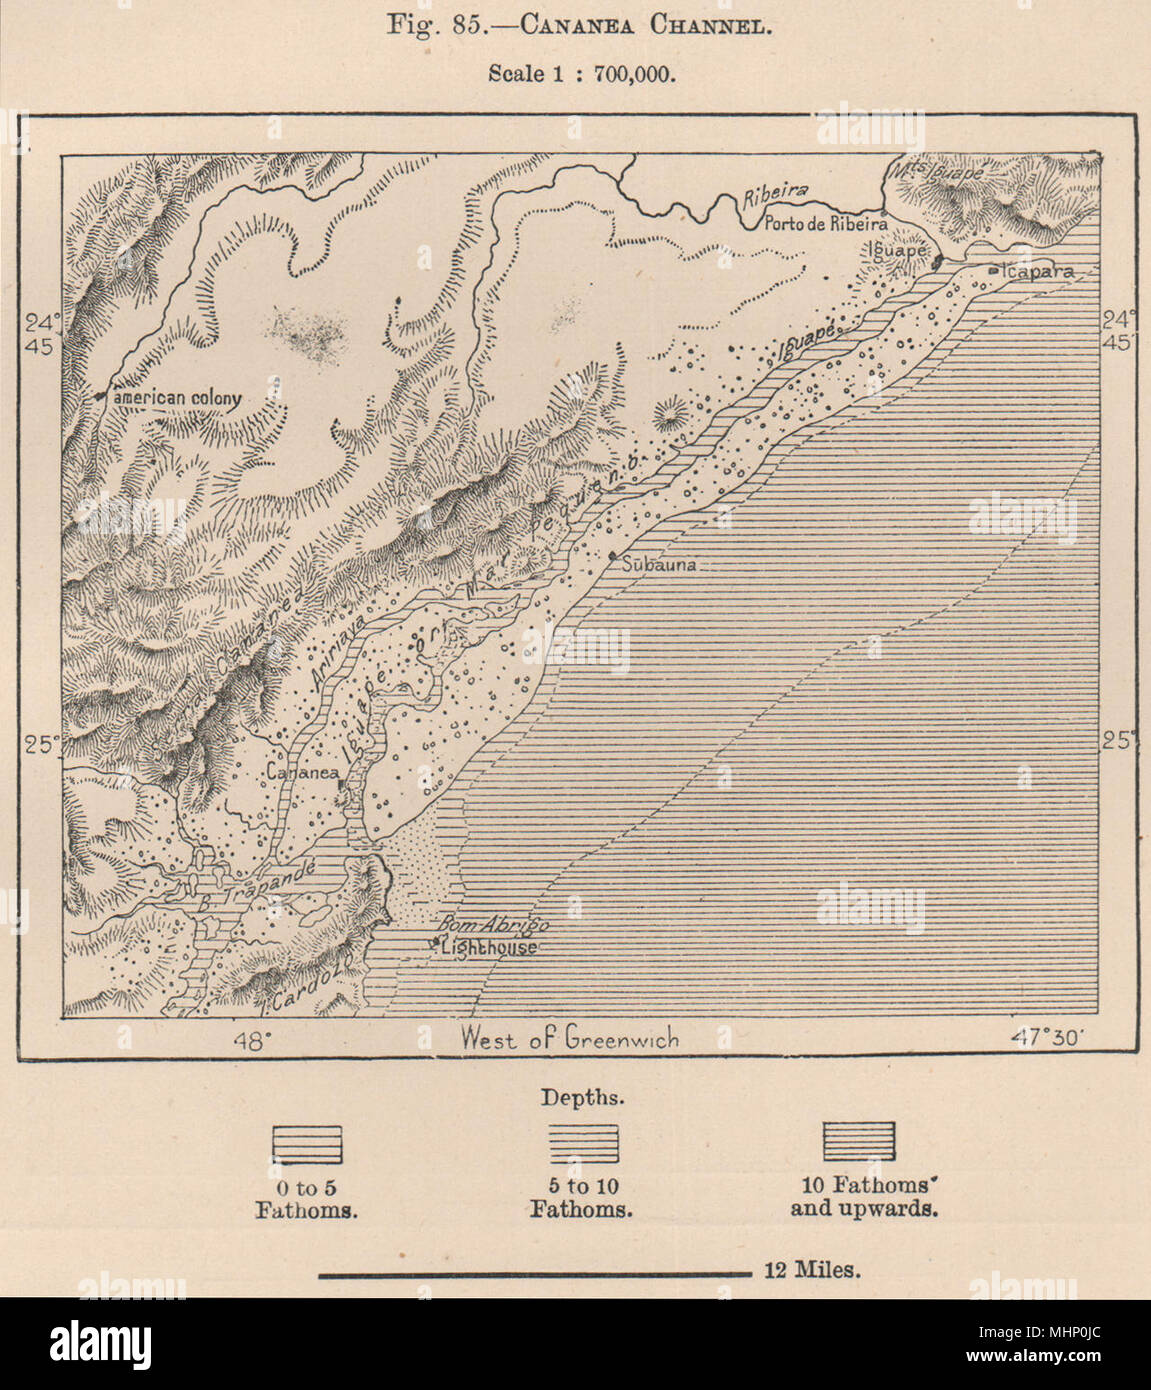 Canal Cananeia.Mar Pequeno.'colonie américaine'.Ilha do Cardoso Brésil 1885 map Banque D'Images